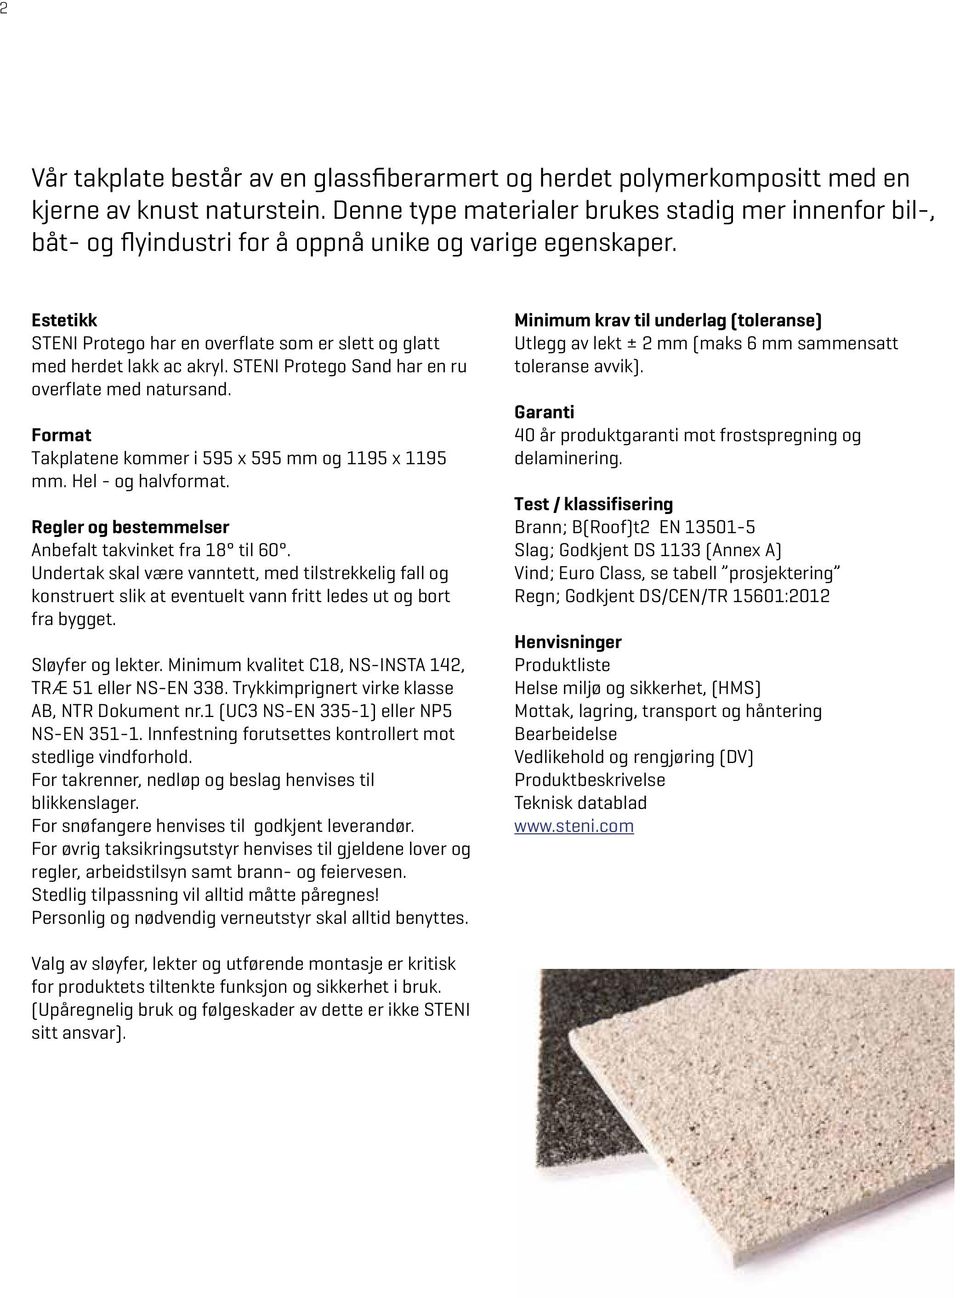 Estetikk STENI Protego har en overflate som er slett og glatt med herdet lakk ac akryl. STENI Protego Sand har en ru overflate med natursand. Format Takplatene kommer i 595 x 595 mm og 1195 x 1195 mm.